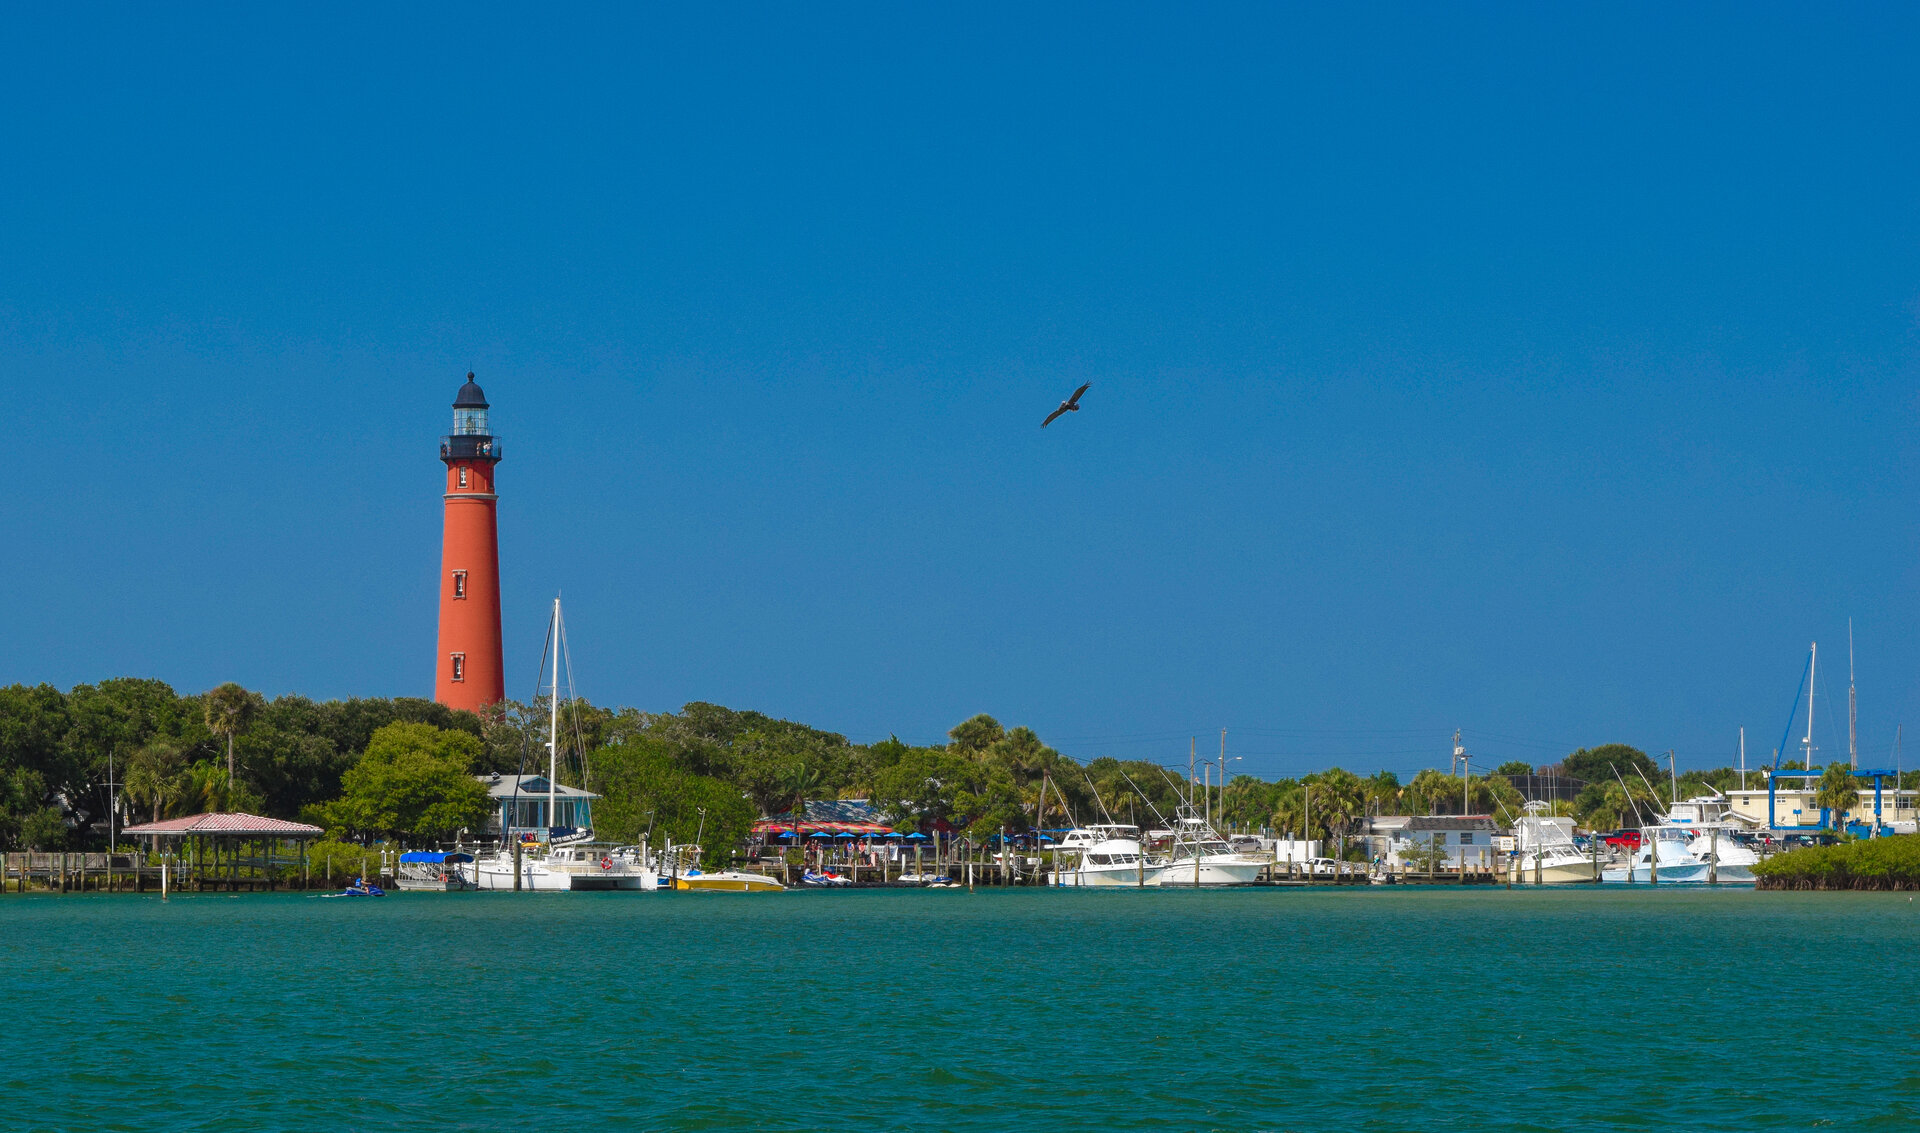 Daytona Beach lighthouse